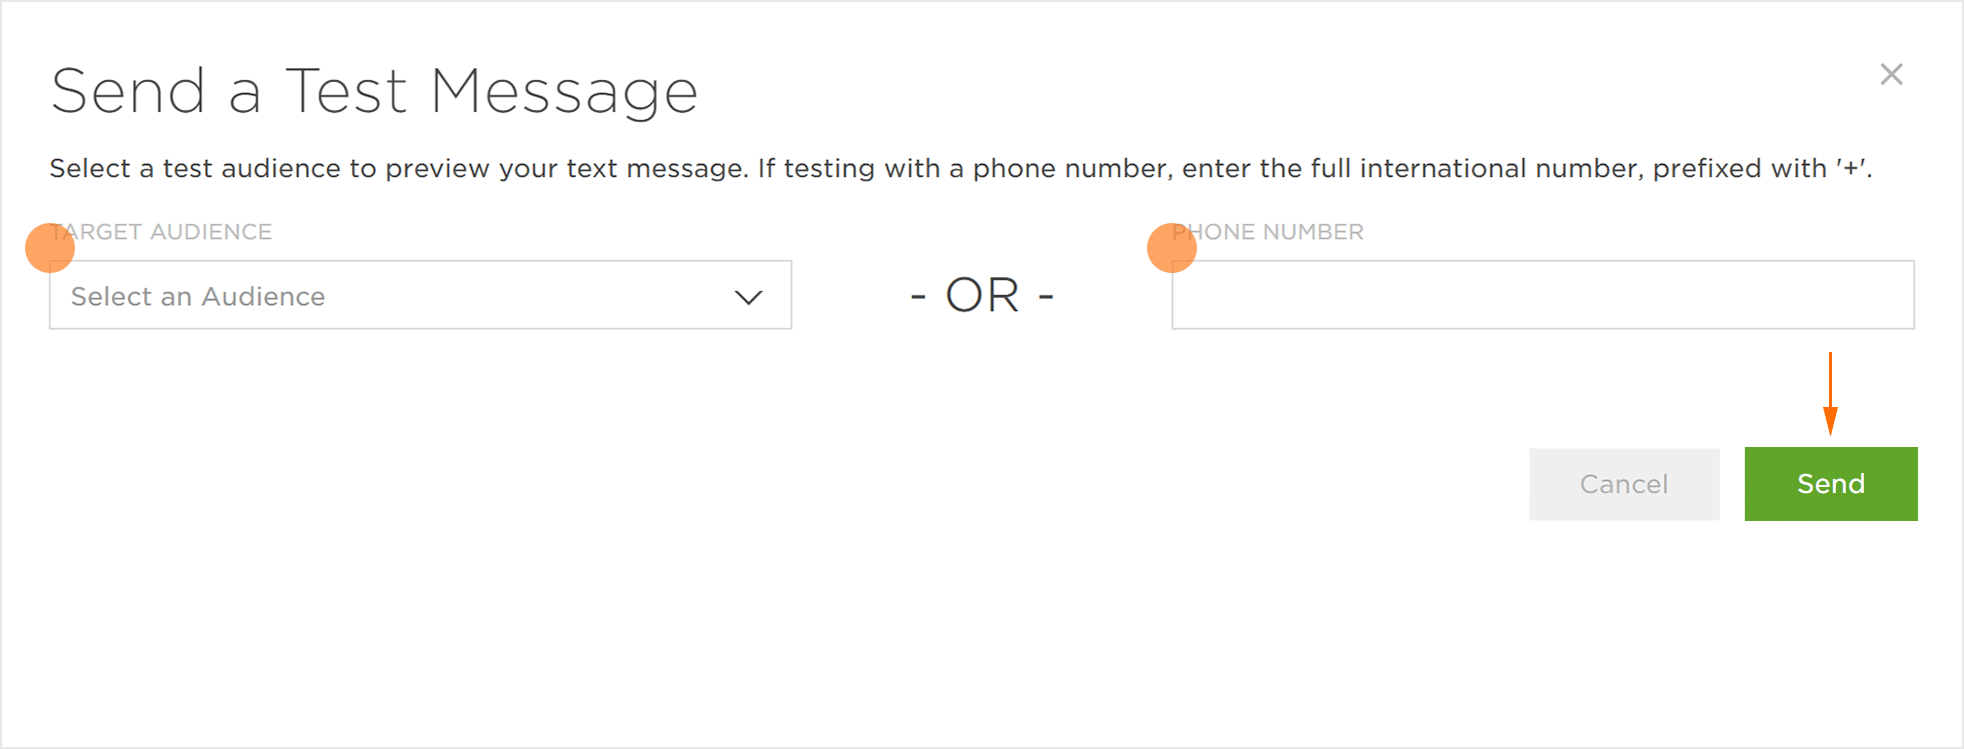 Send Test Message